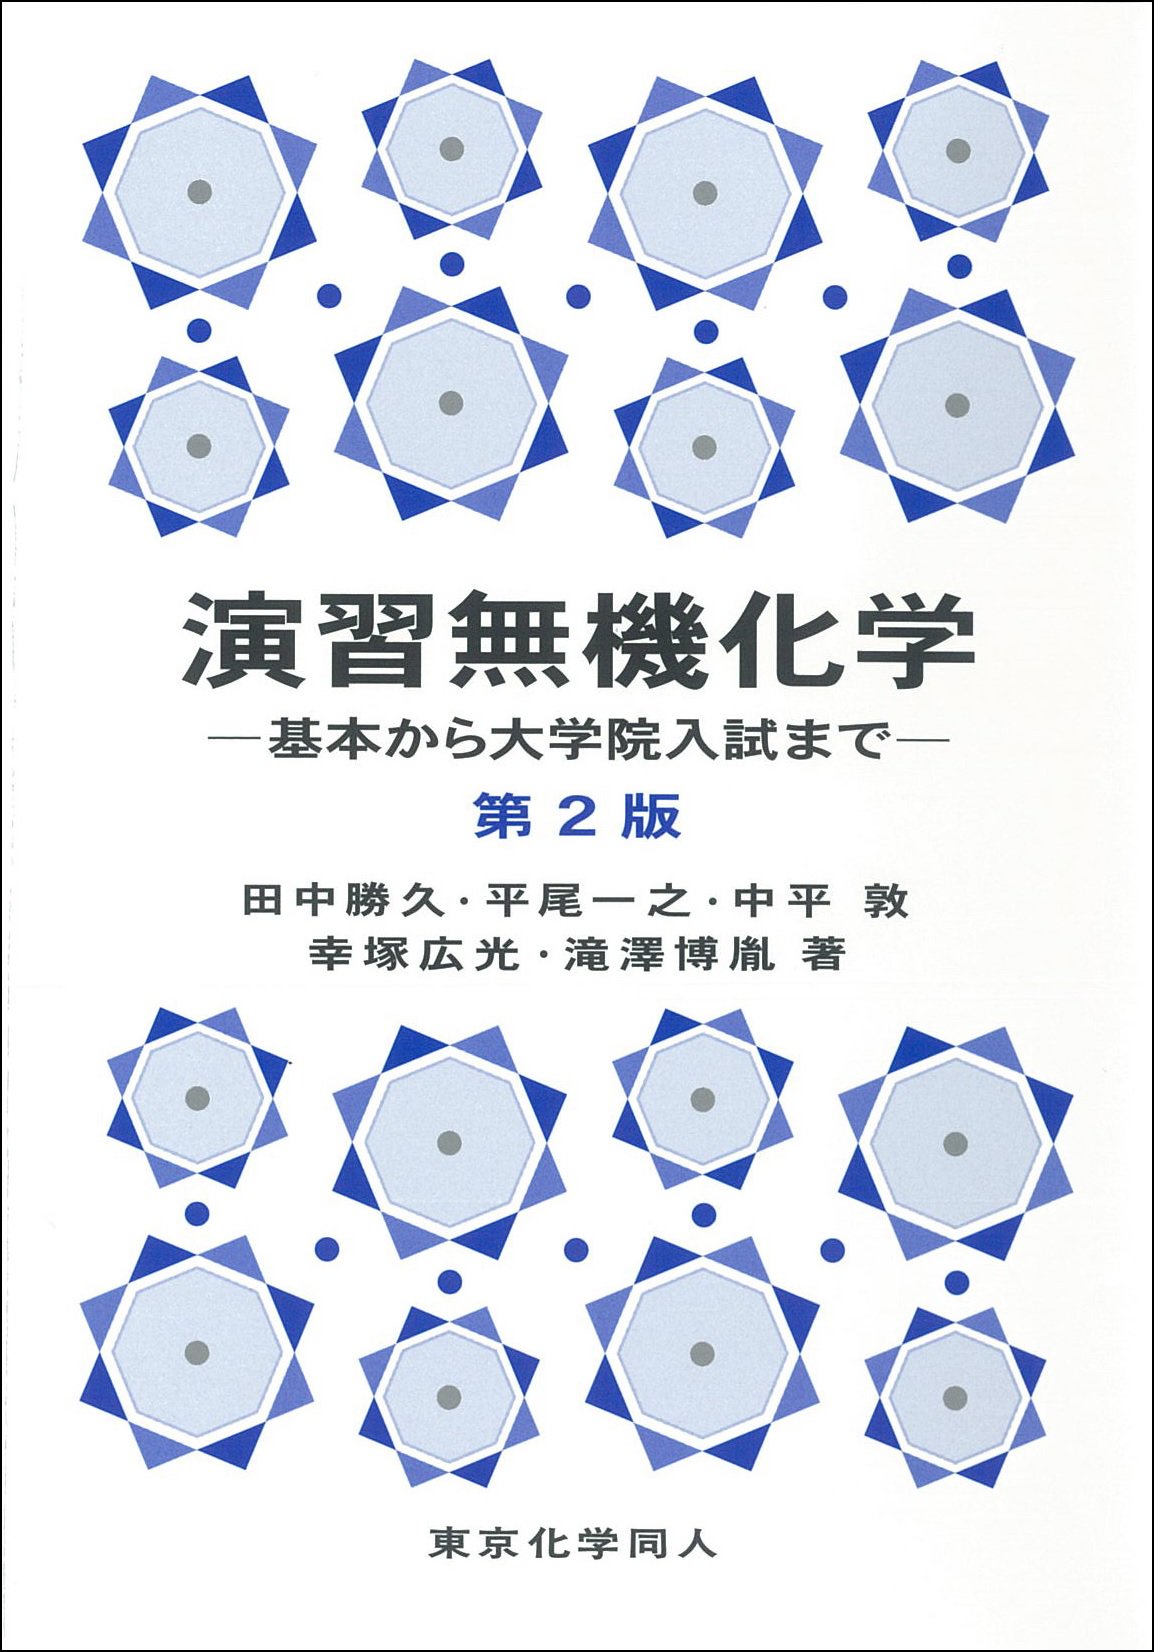 東京化学同人 on Twitter: "新刊『演習無機化学 －基本から大学院入試まで－（第2版）』（田中勝久 ほか 著）の立ち読みデータを